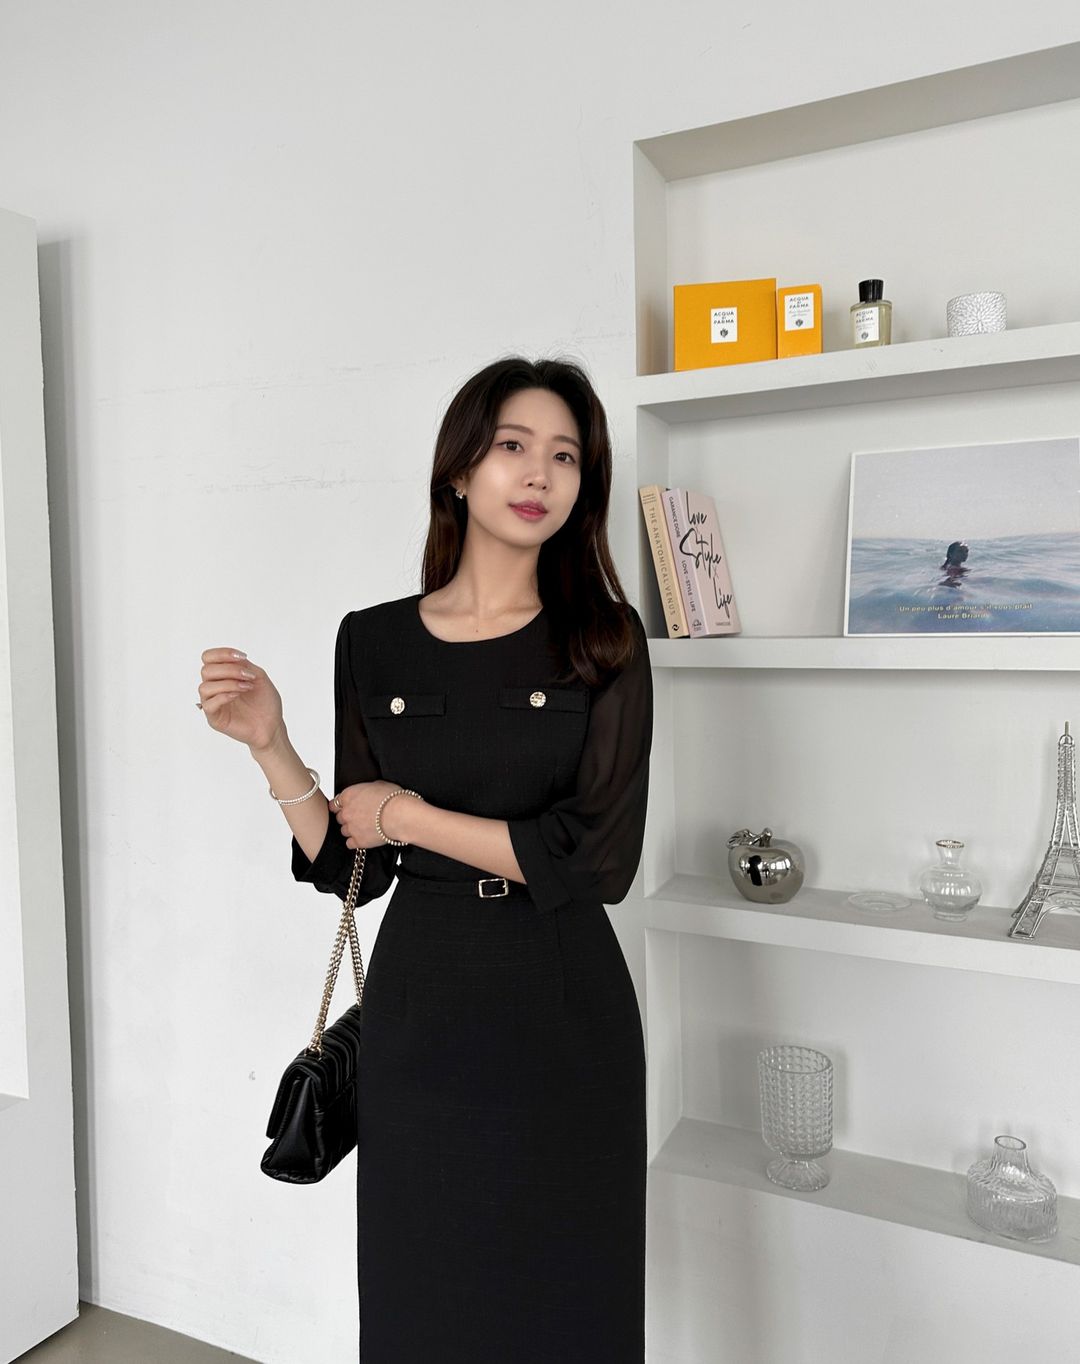 Váy đen tối giản - kiểu váy đáng sắm nhất cho nàng công sở - Ảnh 1.